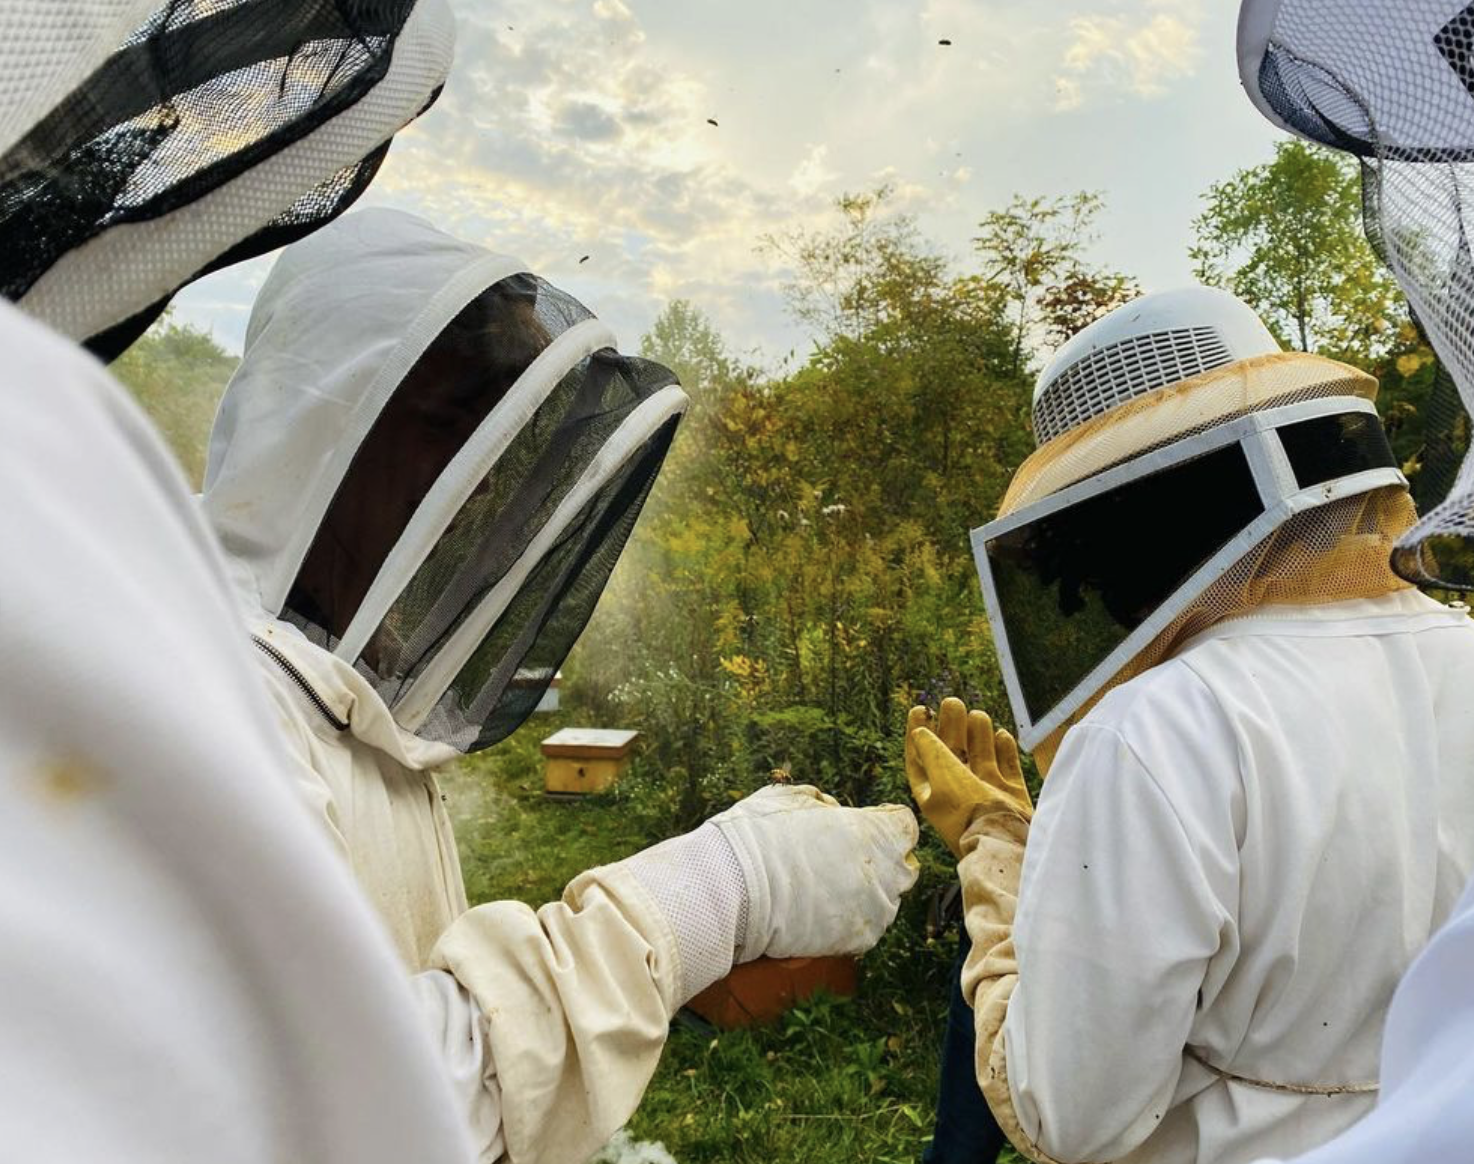 The Purdue Beekeepers